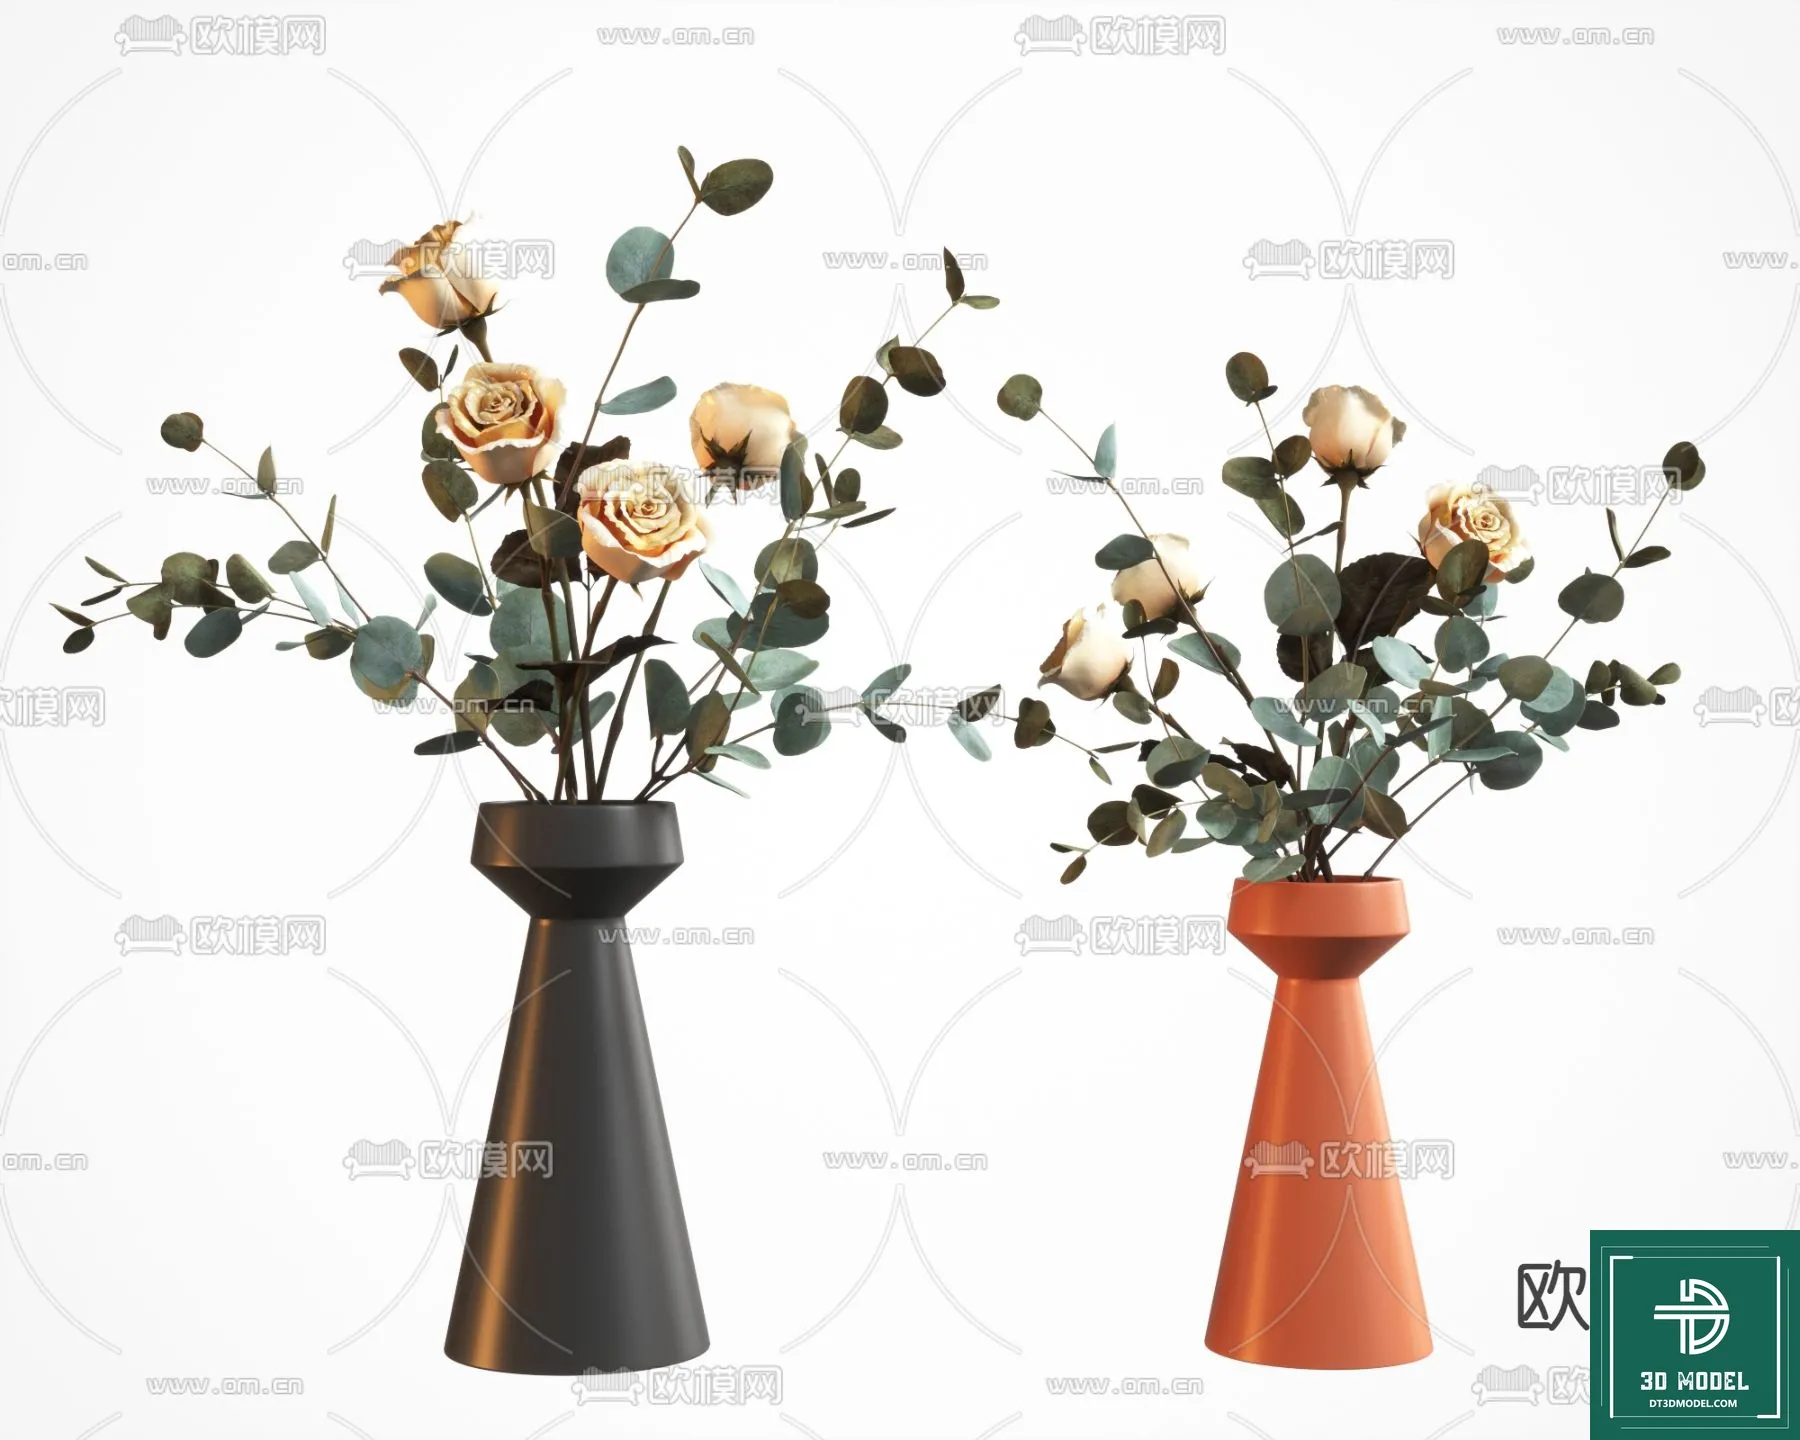 FLOWER VASE 3D MODEL – 042